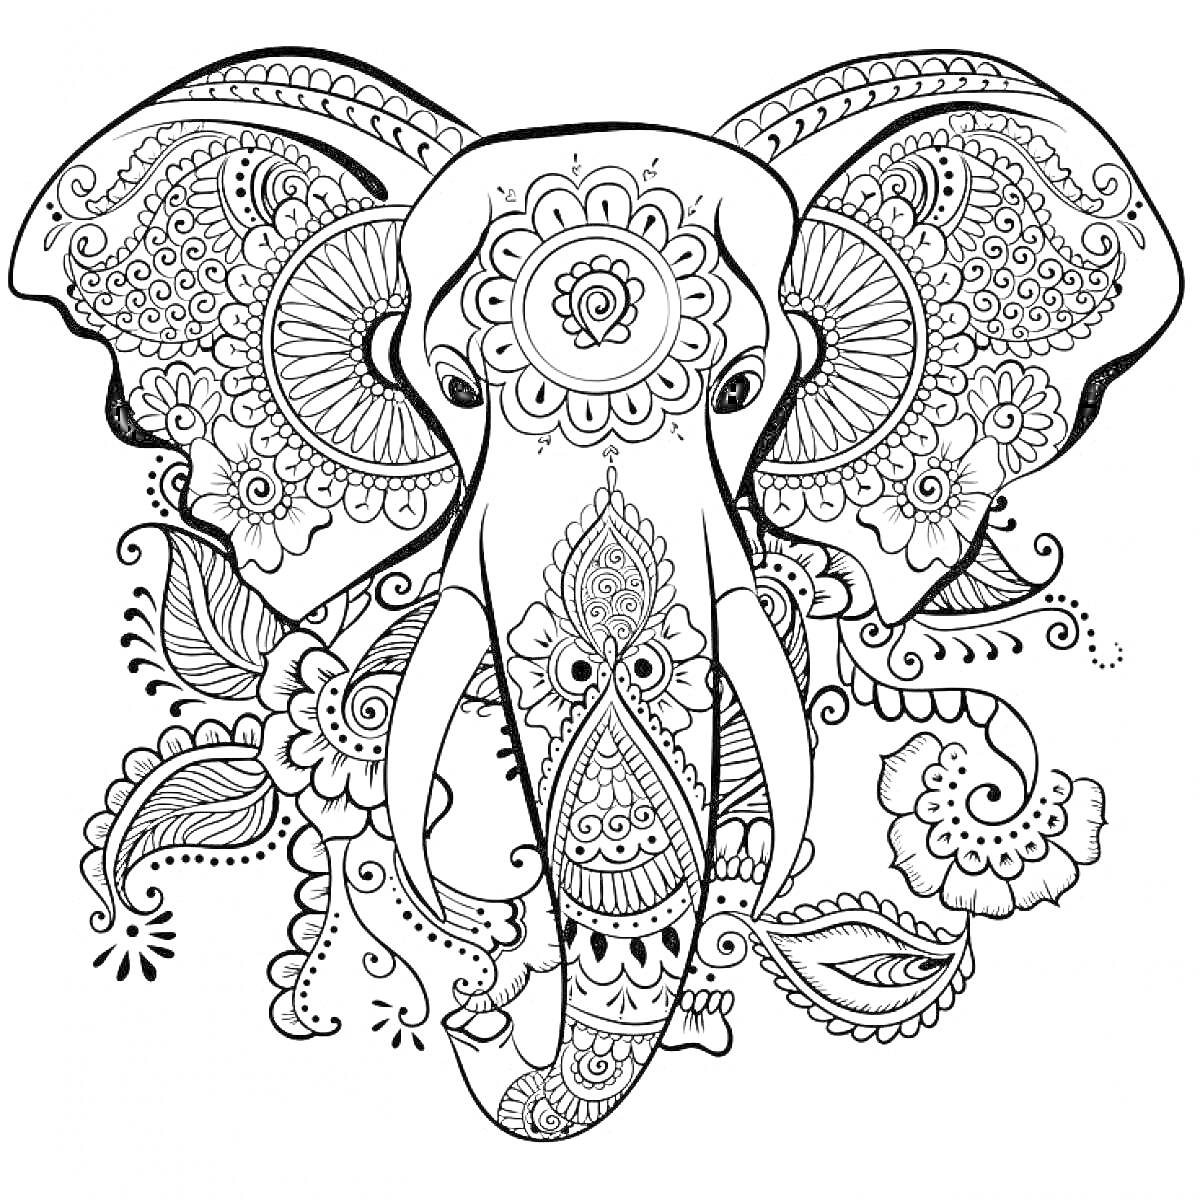 Раскраска слона с декоративными узорами, включающая цветочные орнаменты и листовые элементы